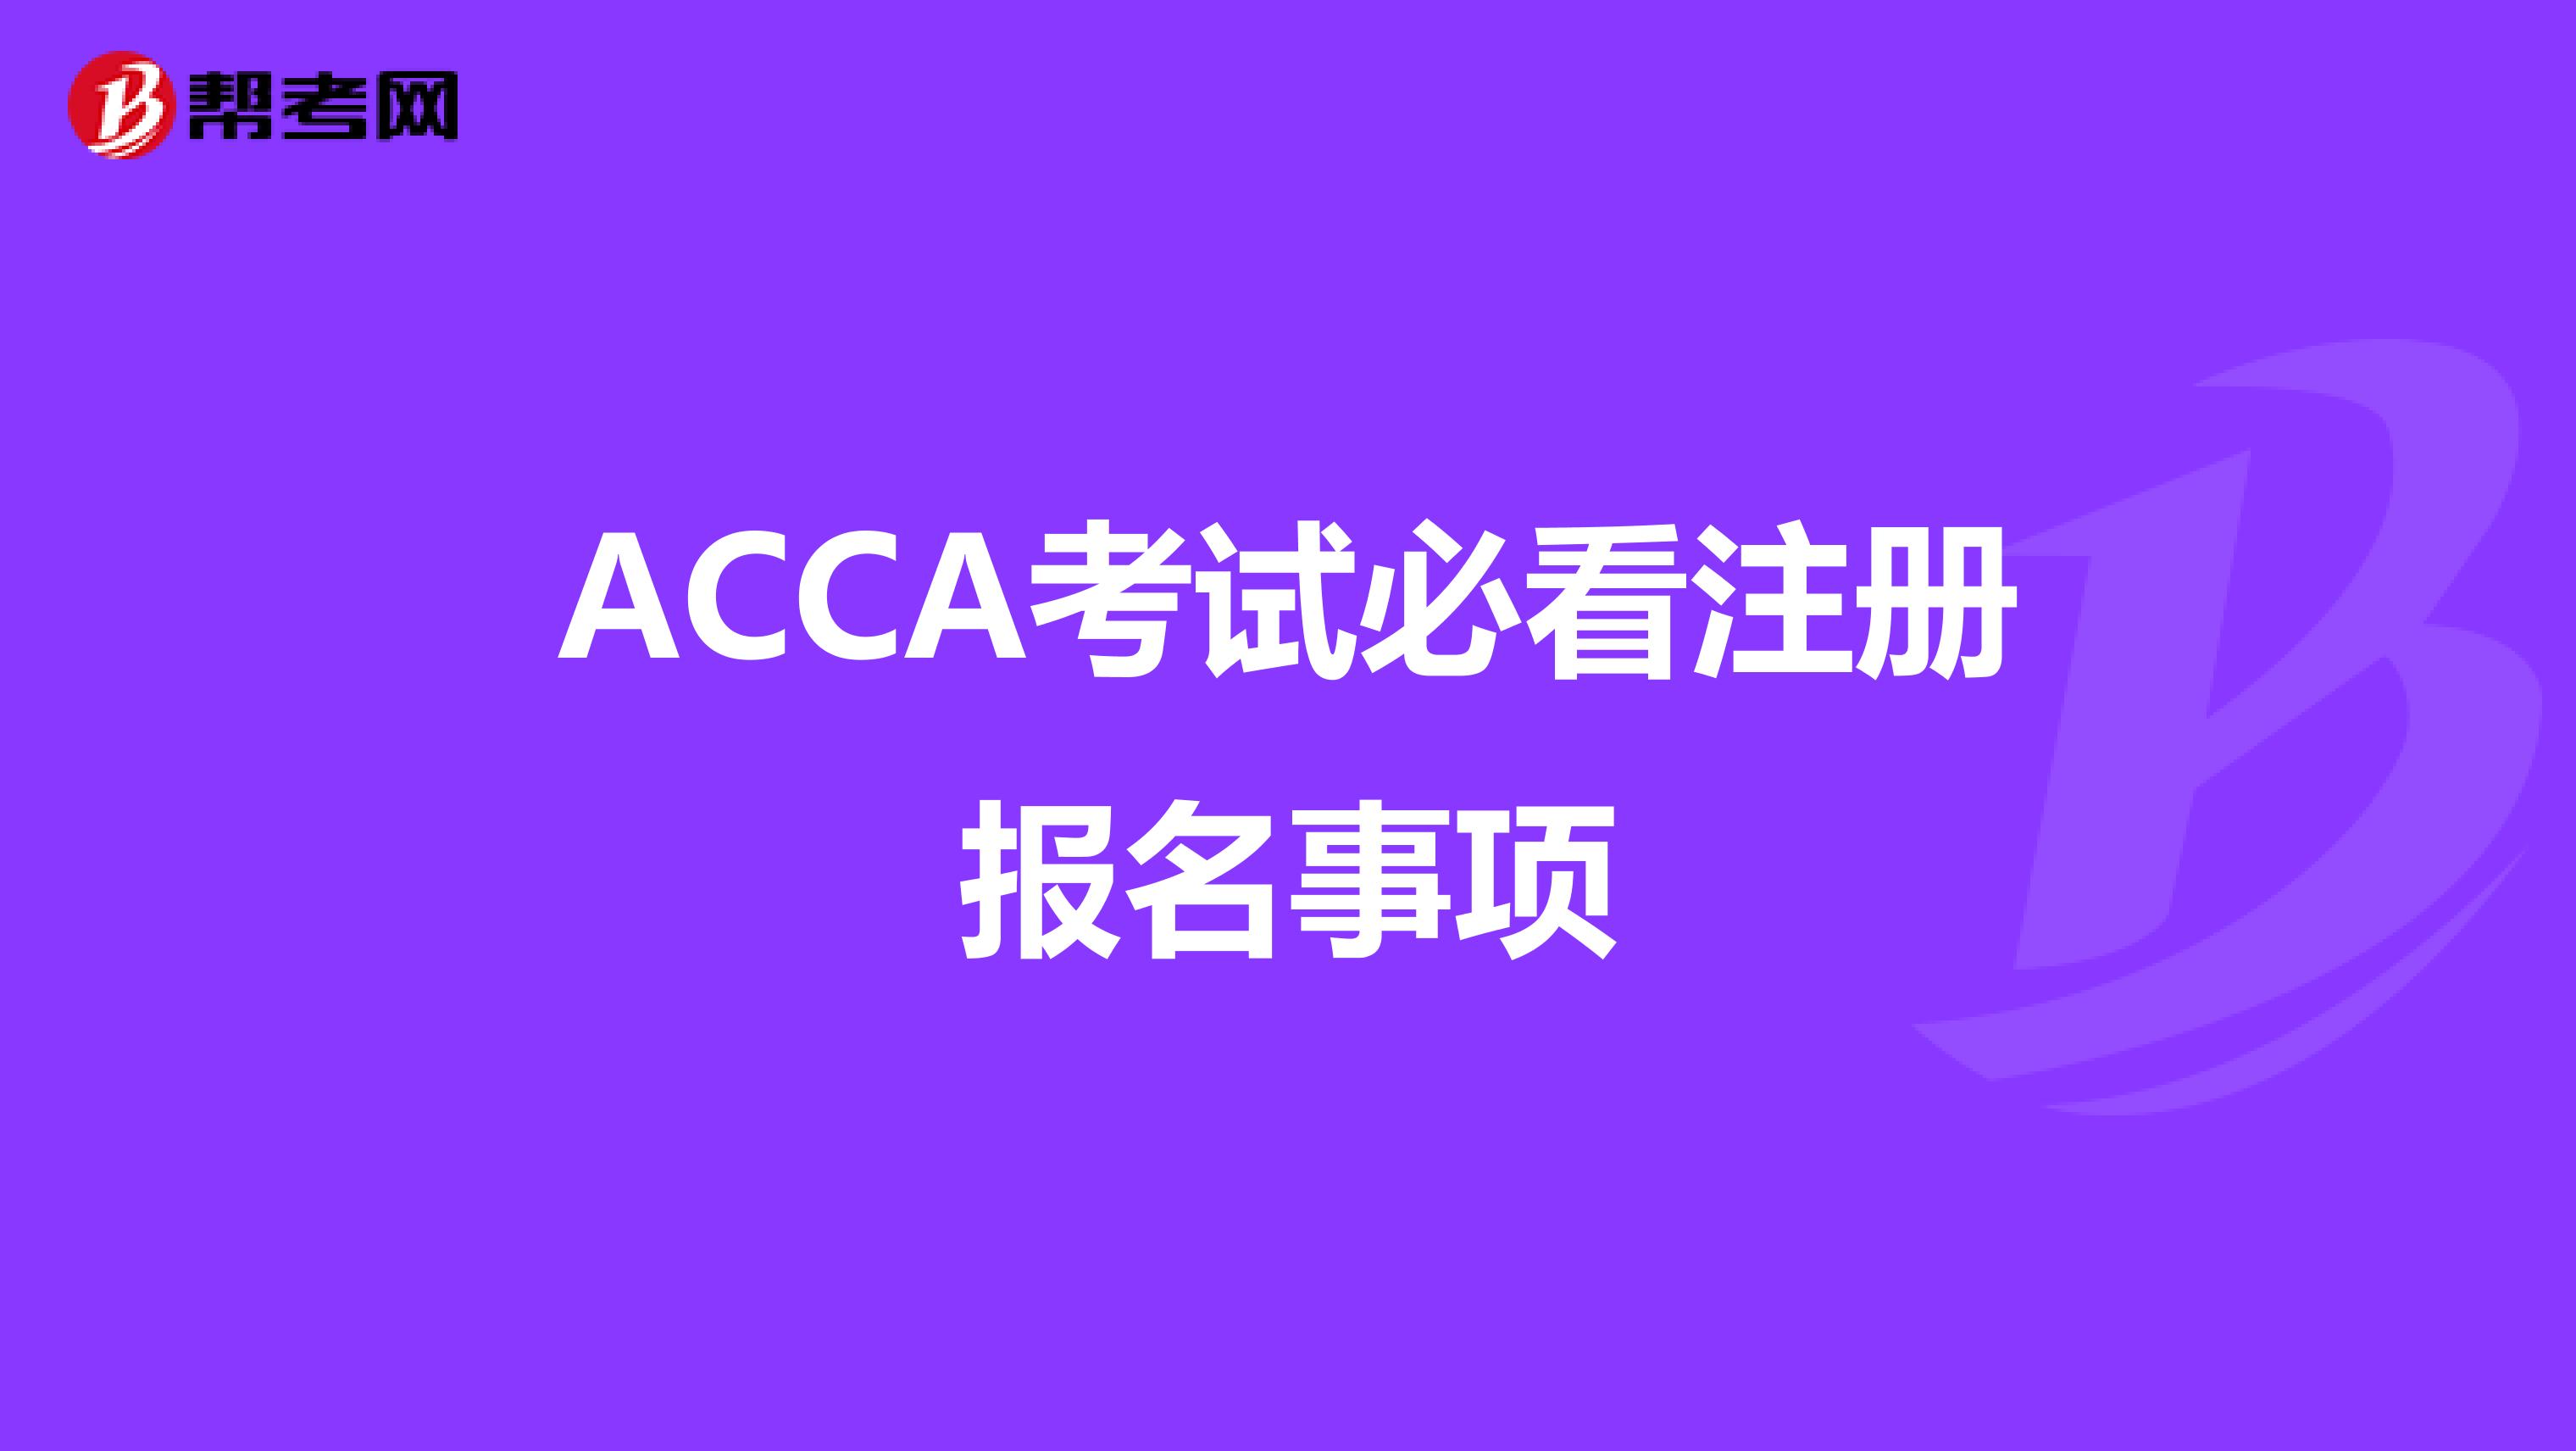 ACCA考试必看注册报名事项